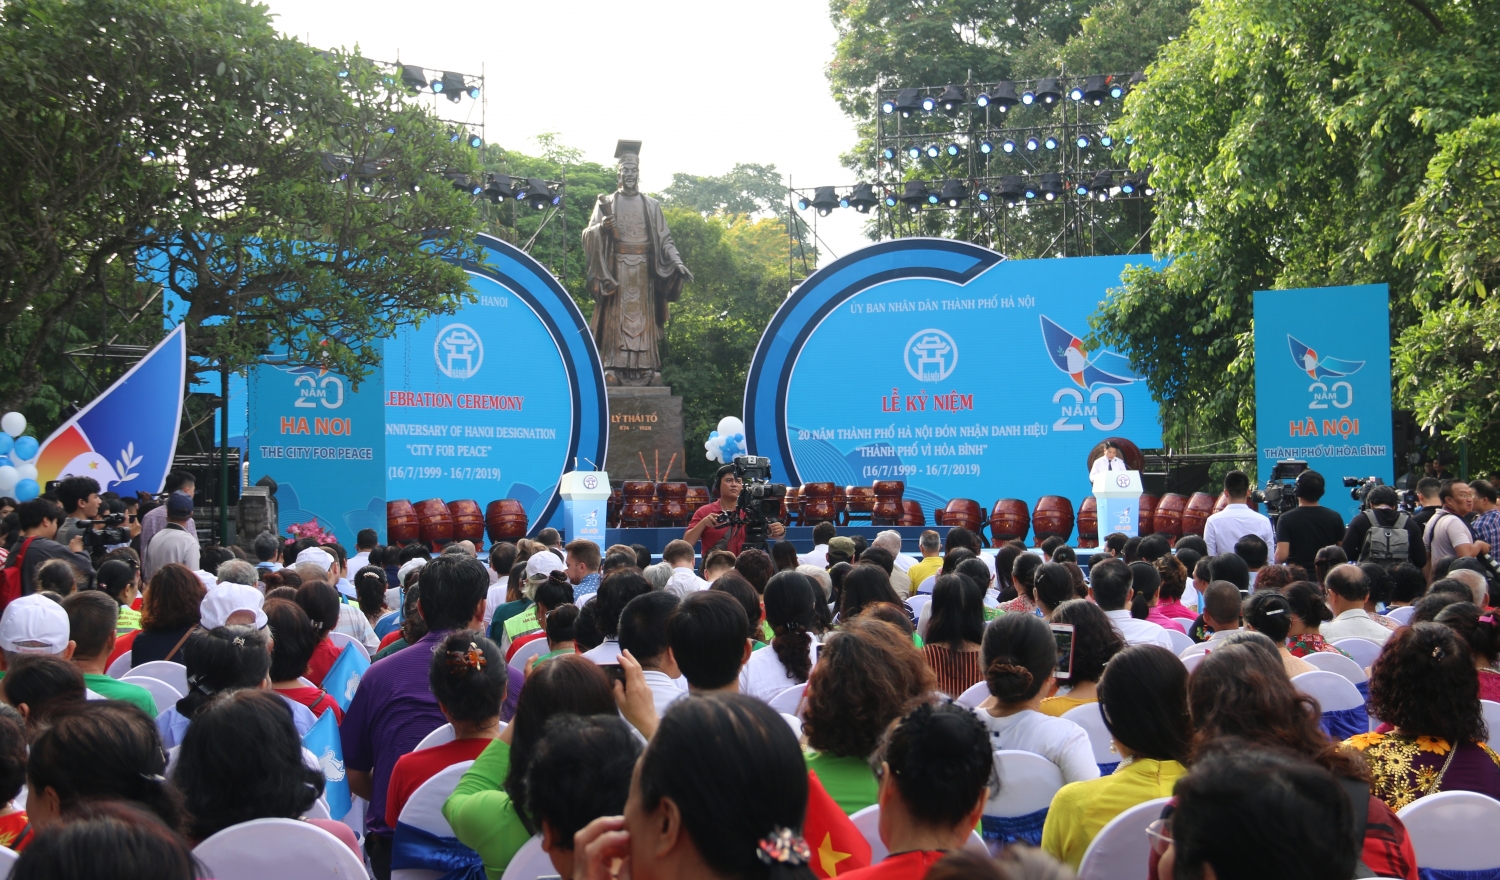 Thủ đô Hà Nội đã trở thành trung tâm kết nối các giá trị toàn cầu